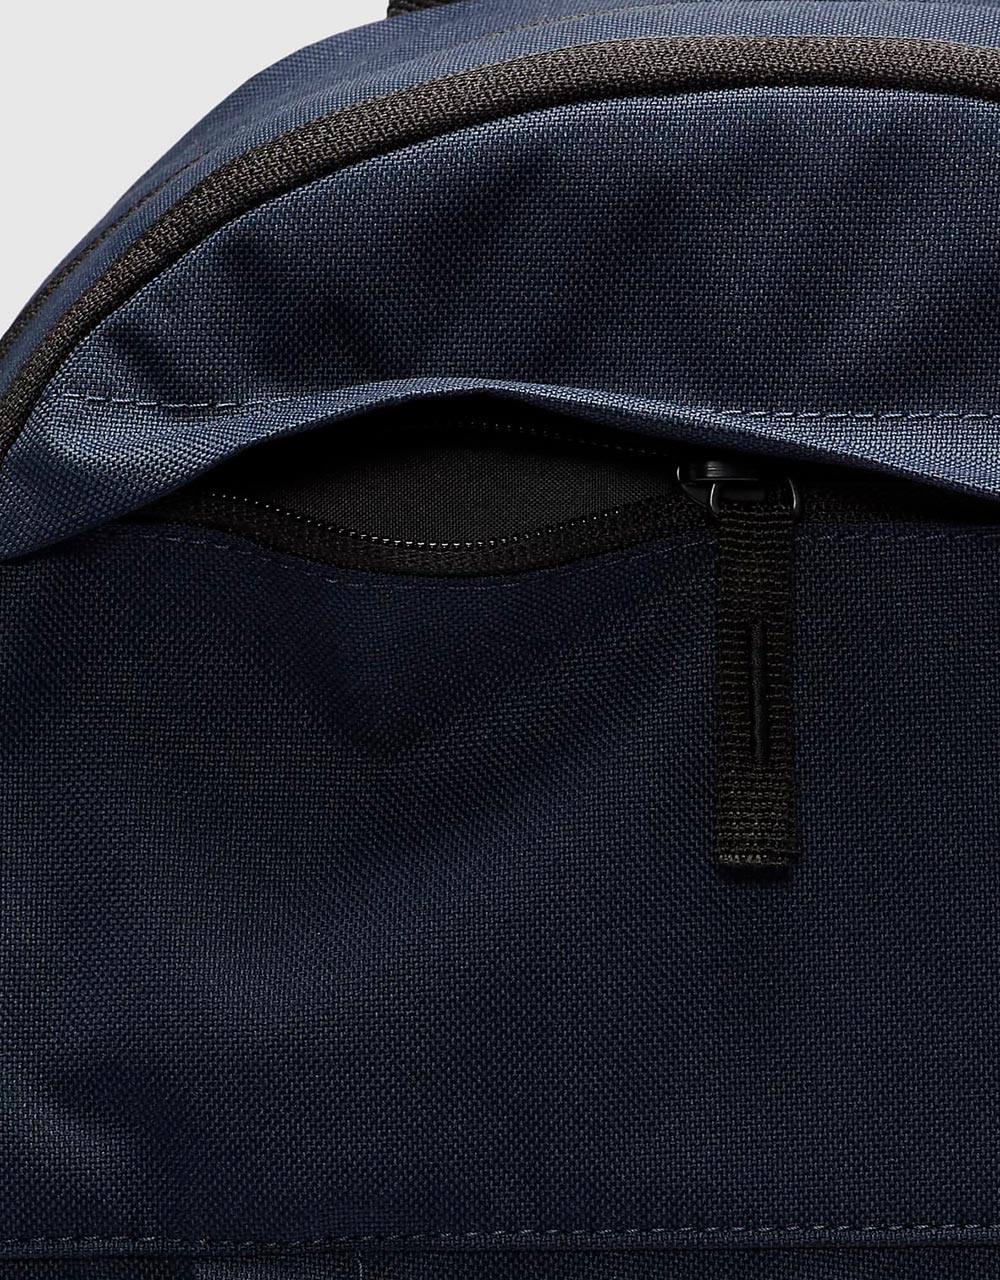 Nike SB Elemental Backpack - Obsidian/Black/White